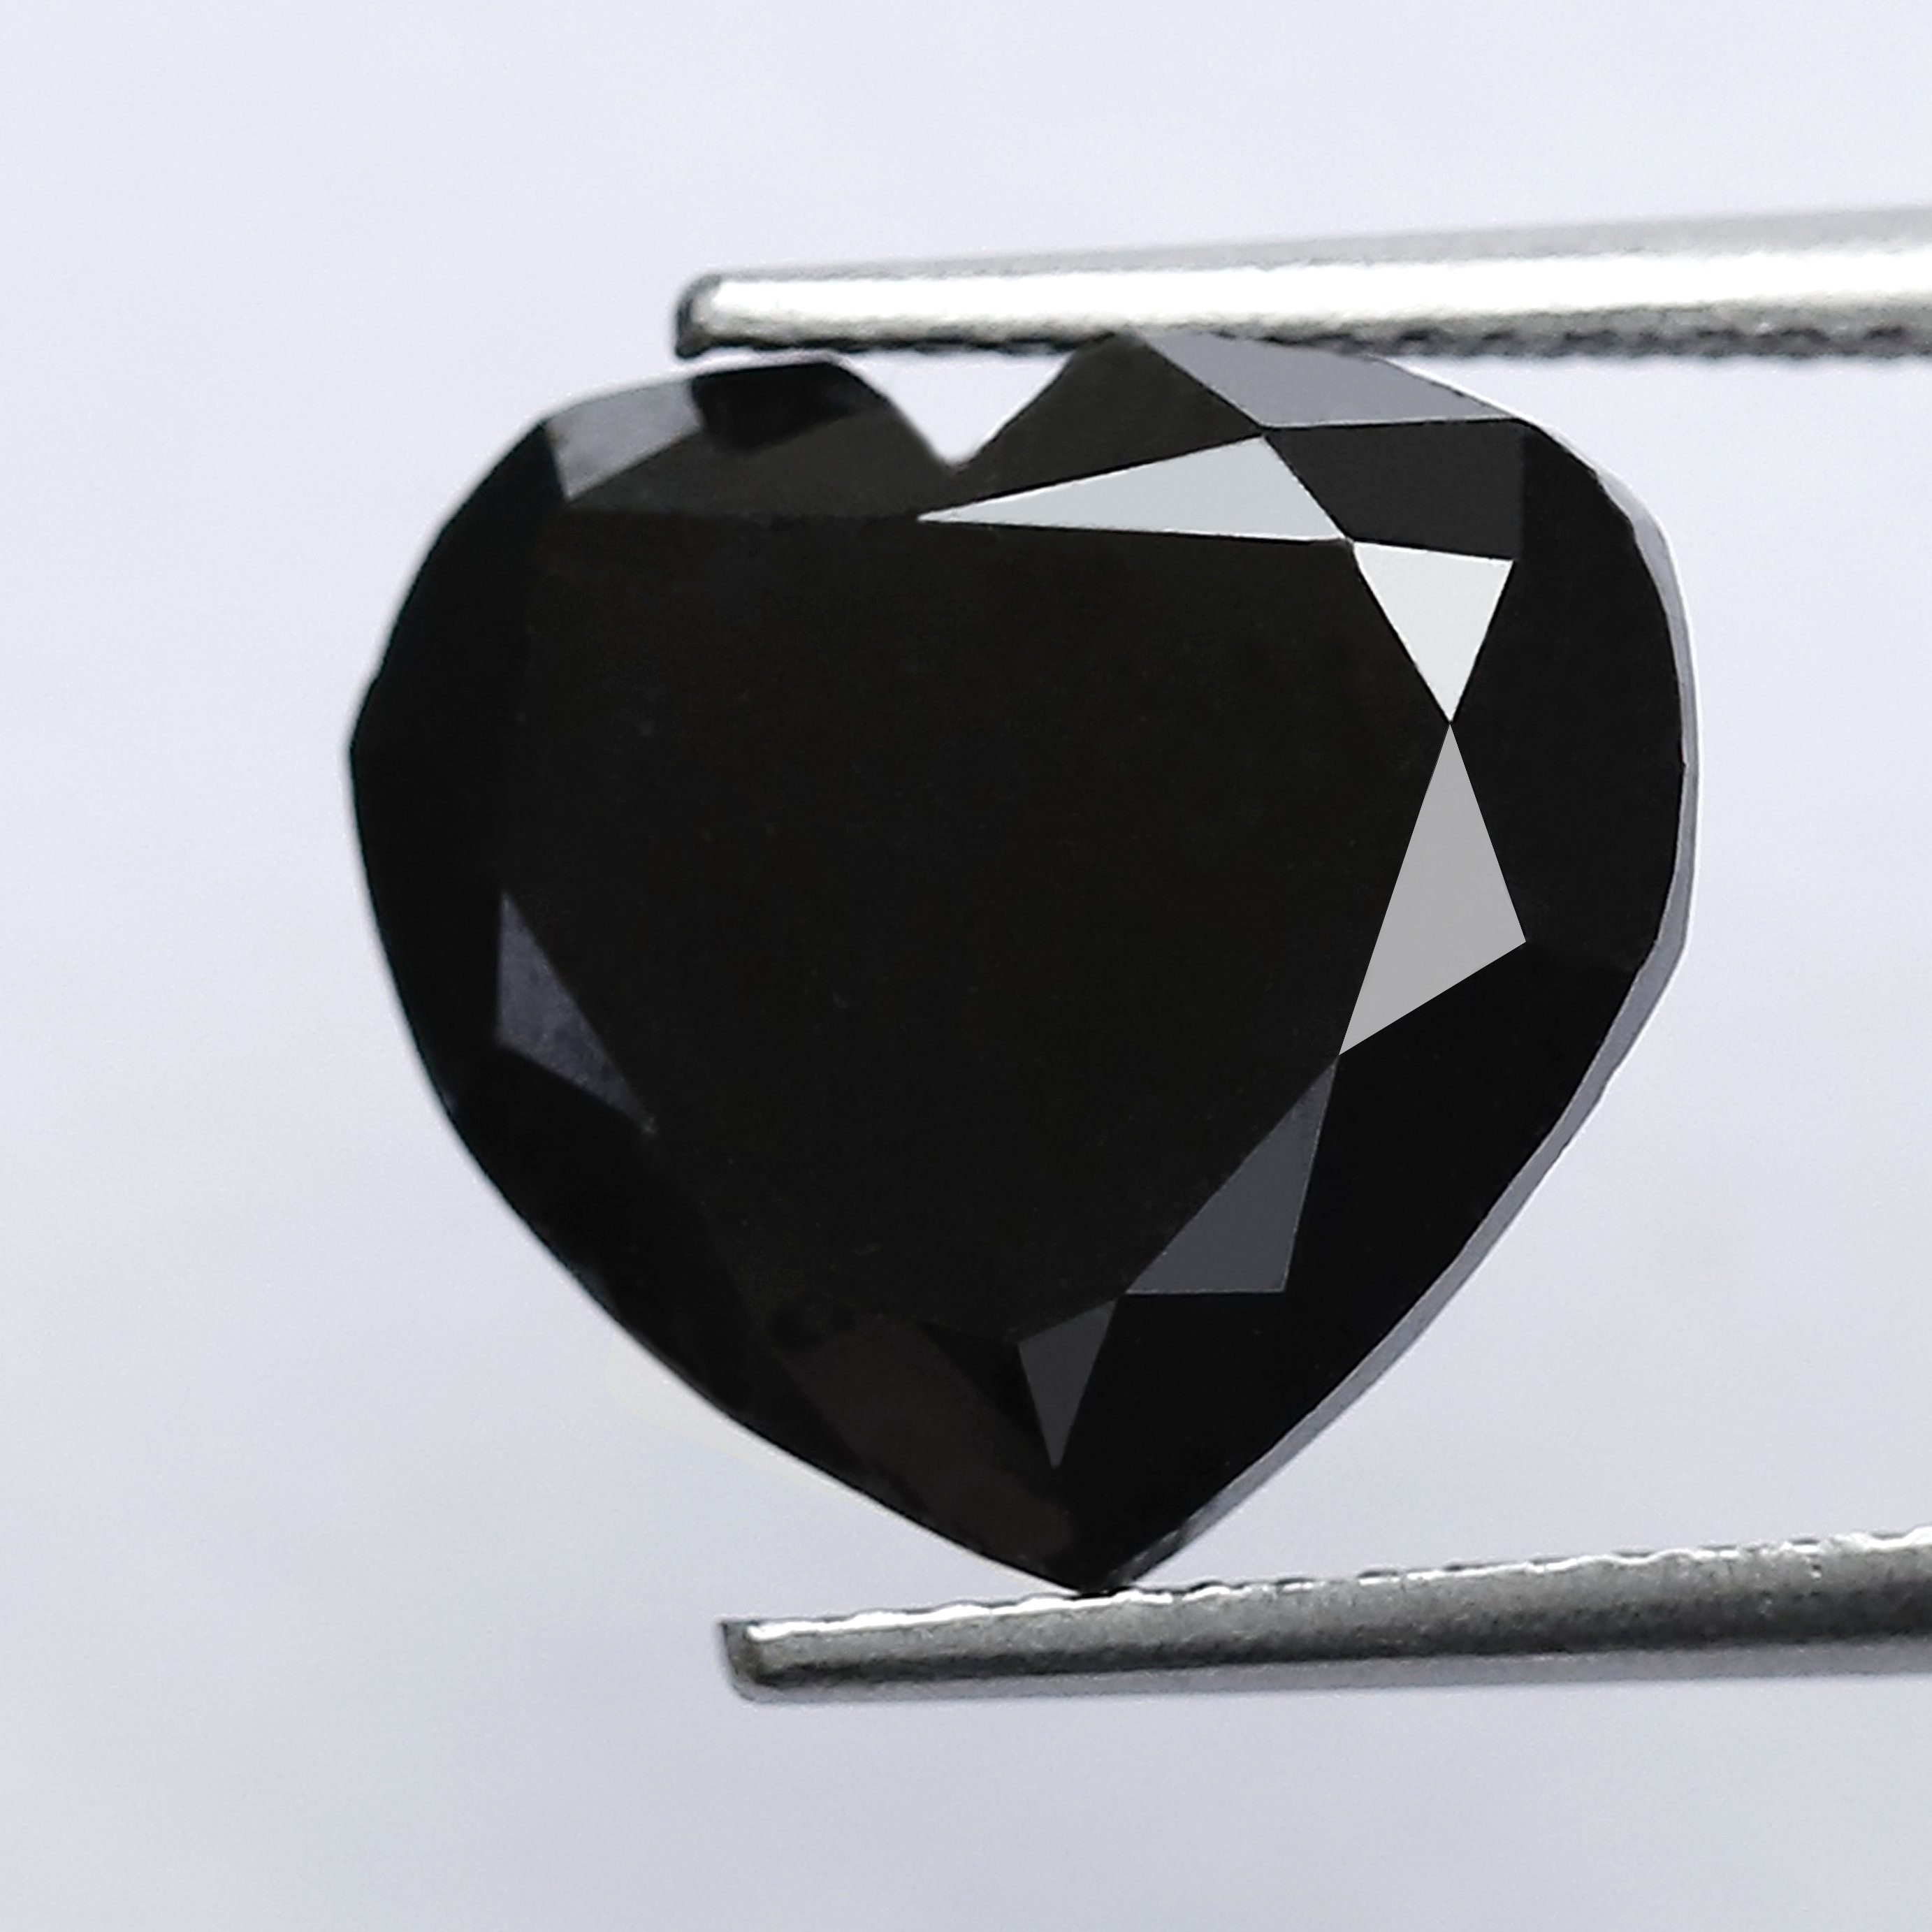 Huge heart black diamond